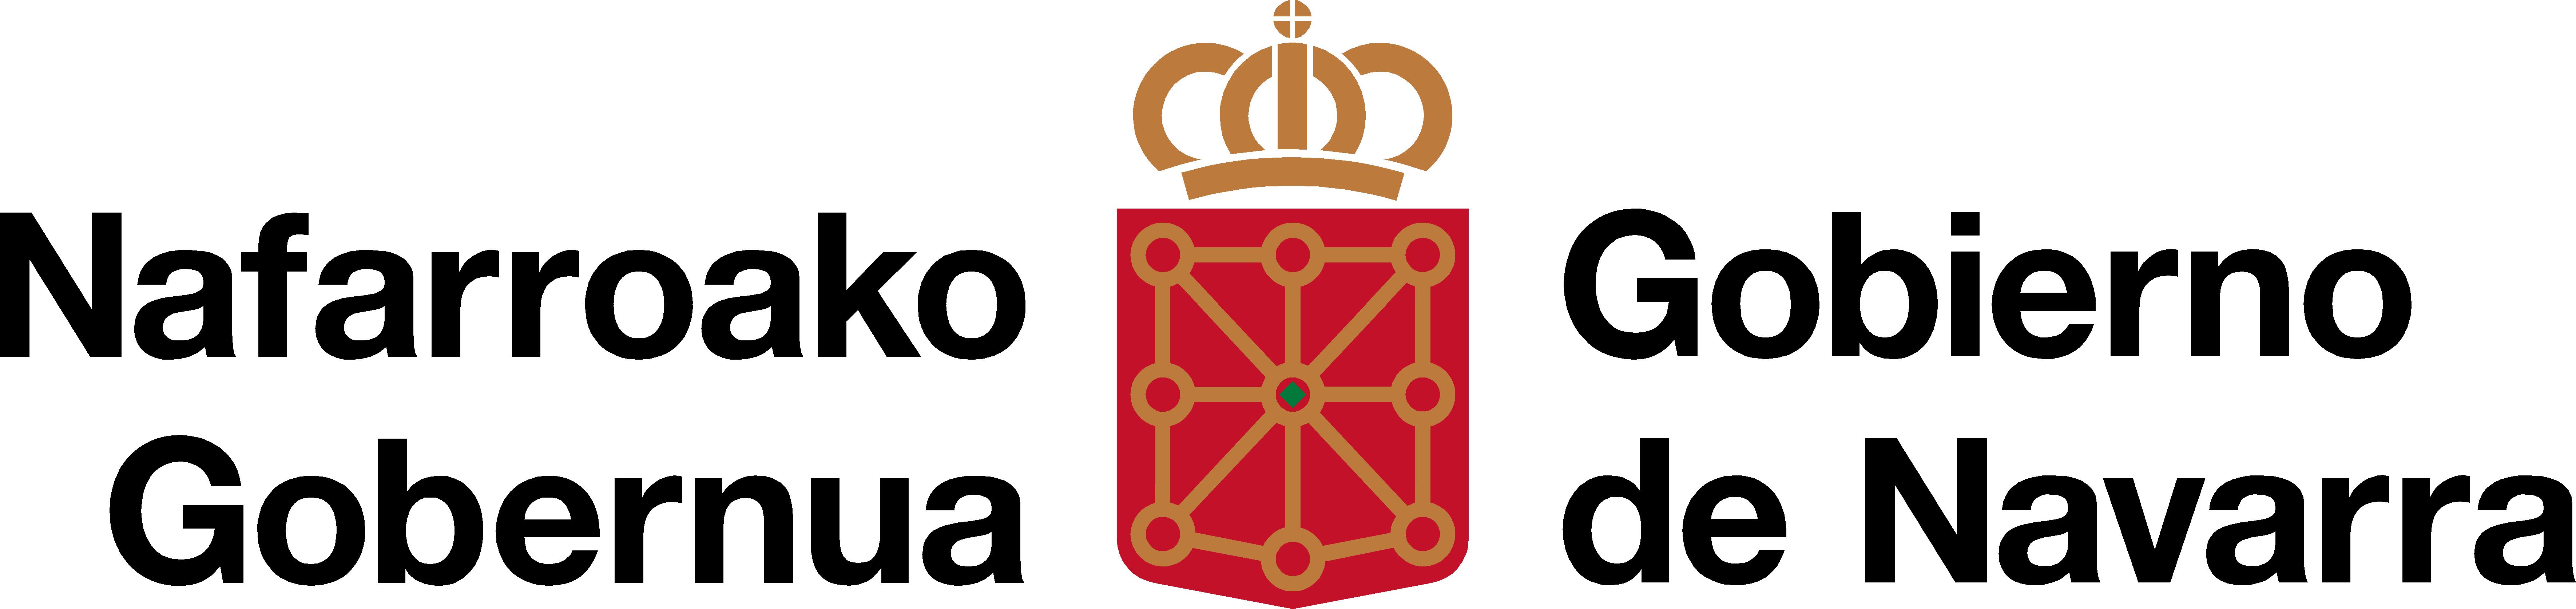 Gobierno de Navarra - Euskarabidea